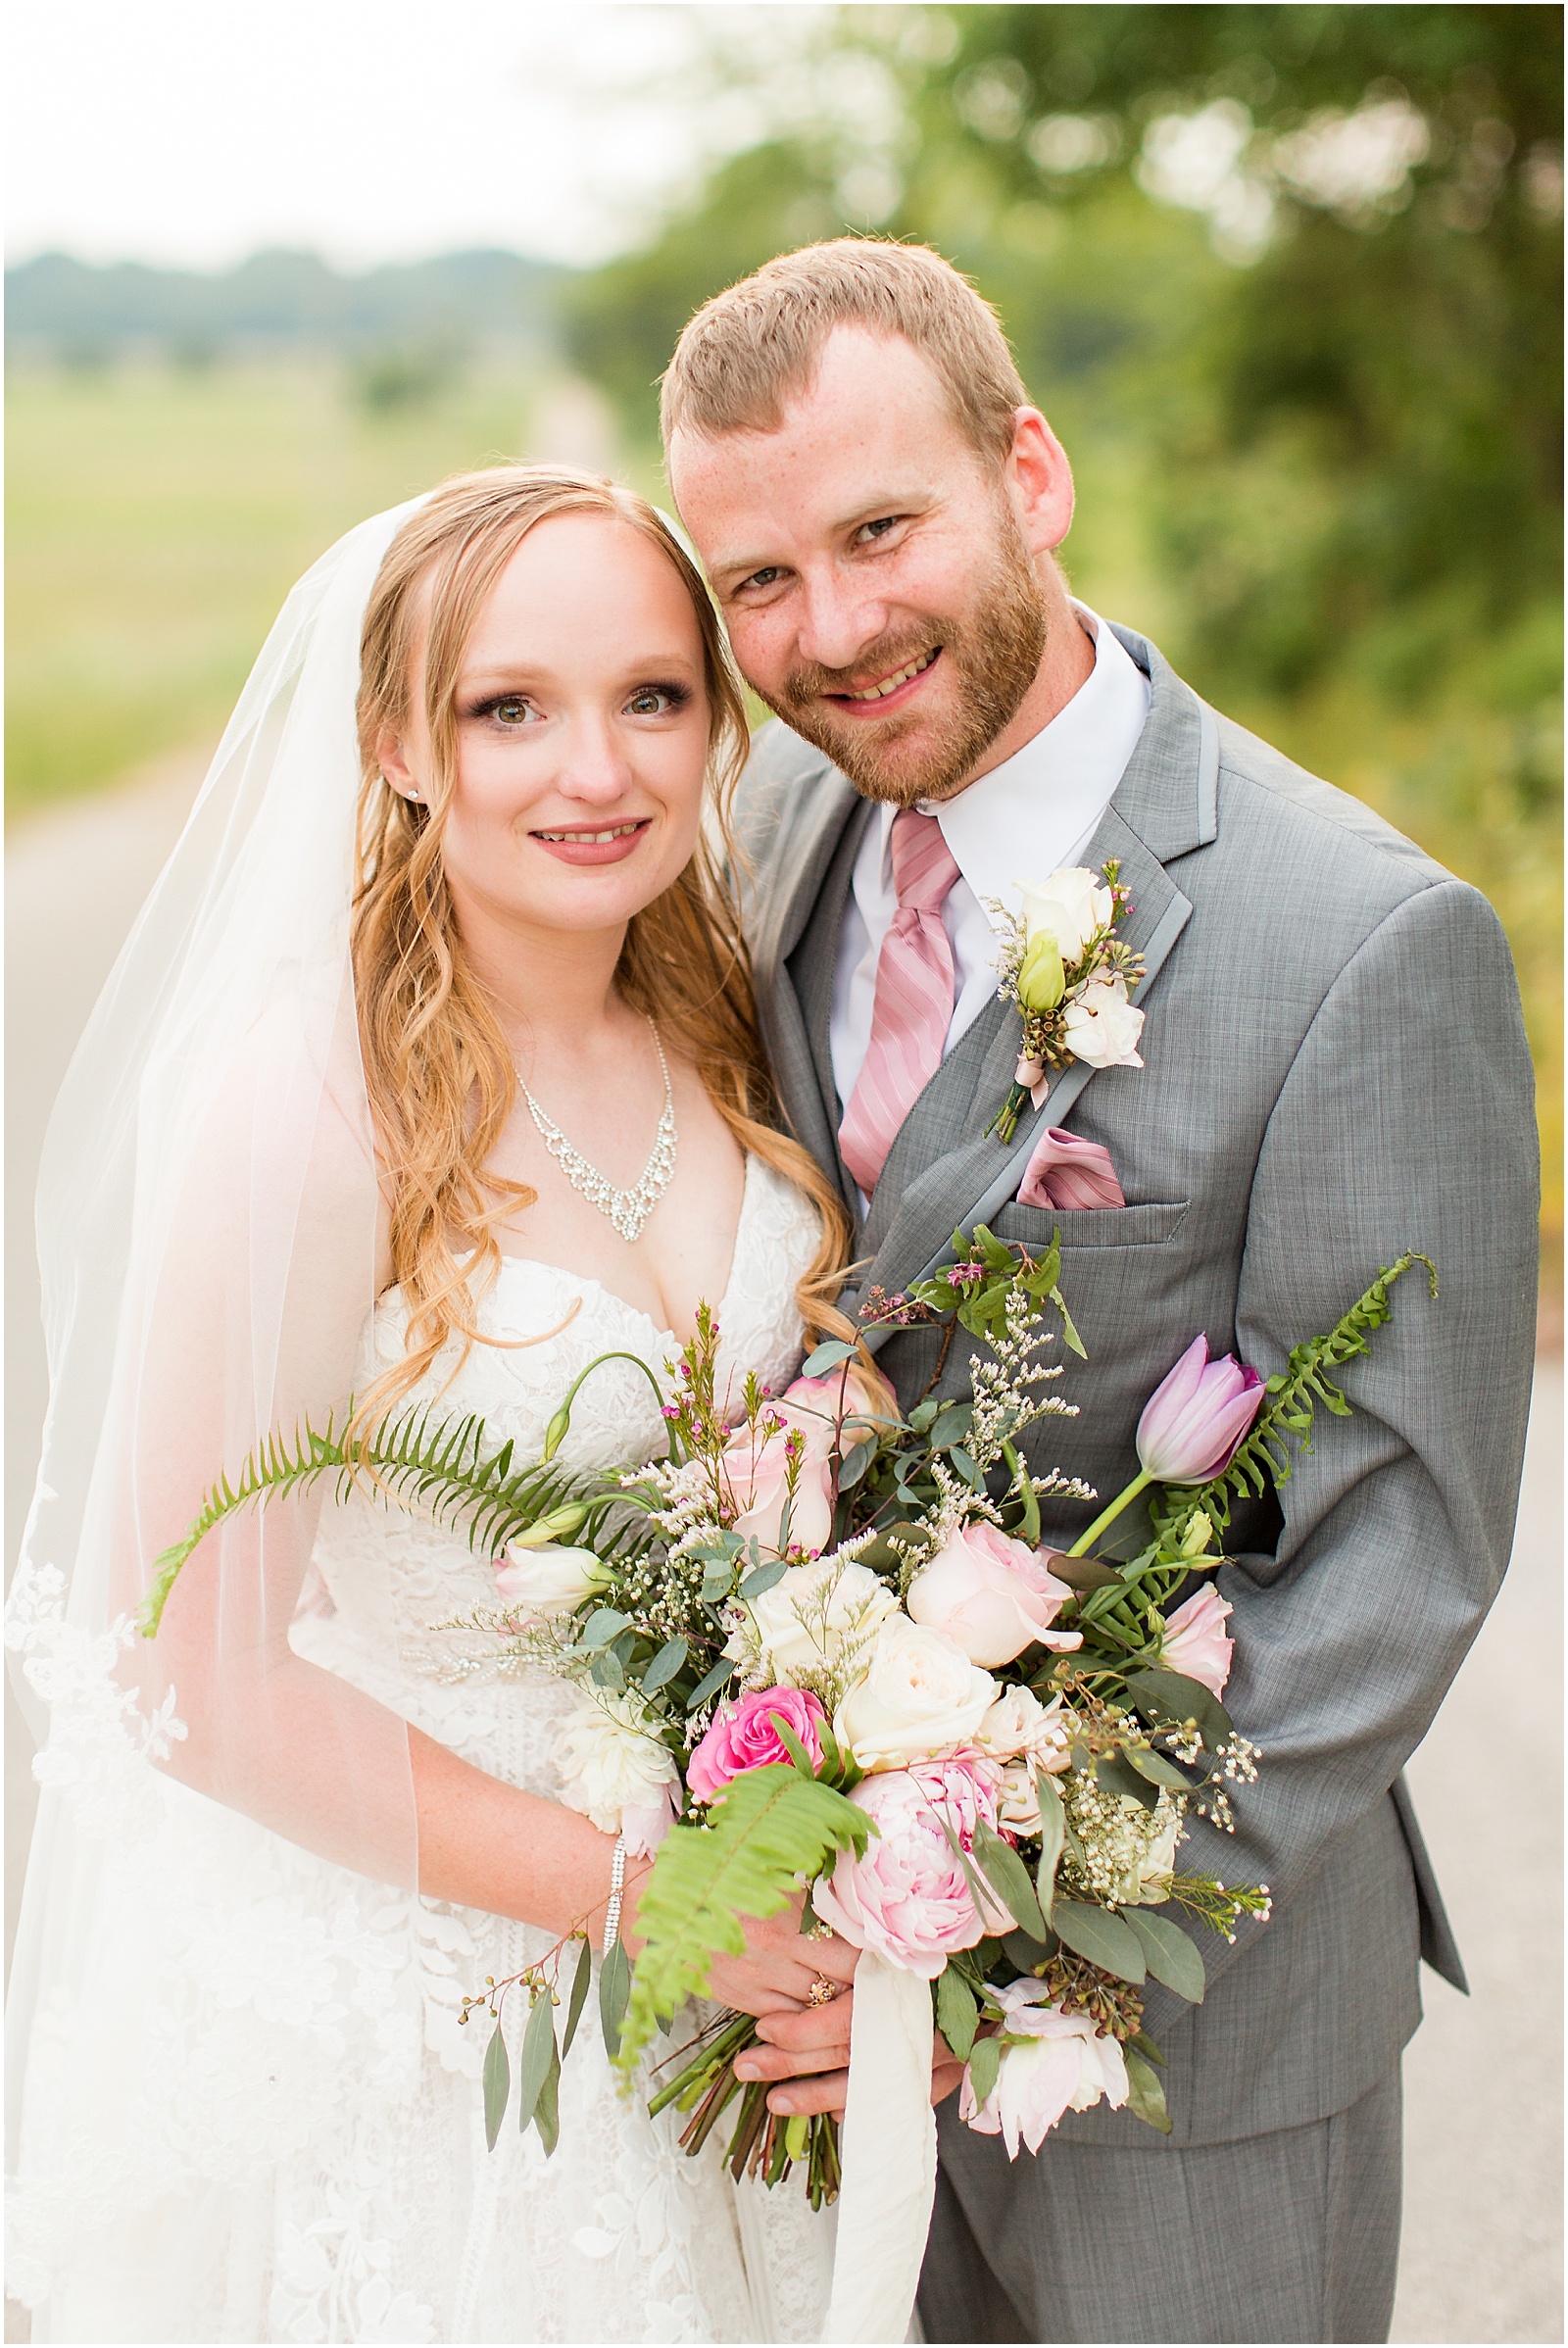 Sierra and Eddie | Wedding BlogBret and Brandie Blog | @bretandbrandie-0112.jpg